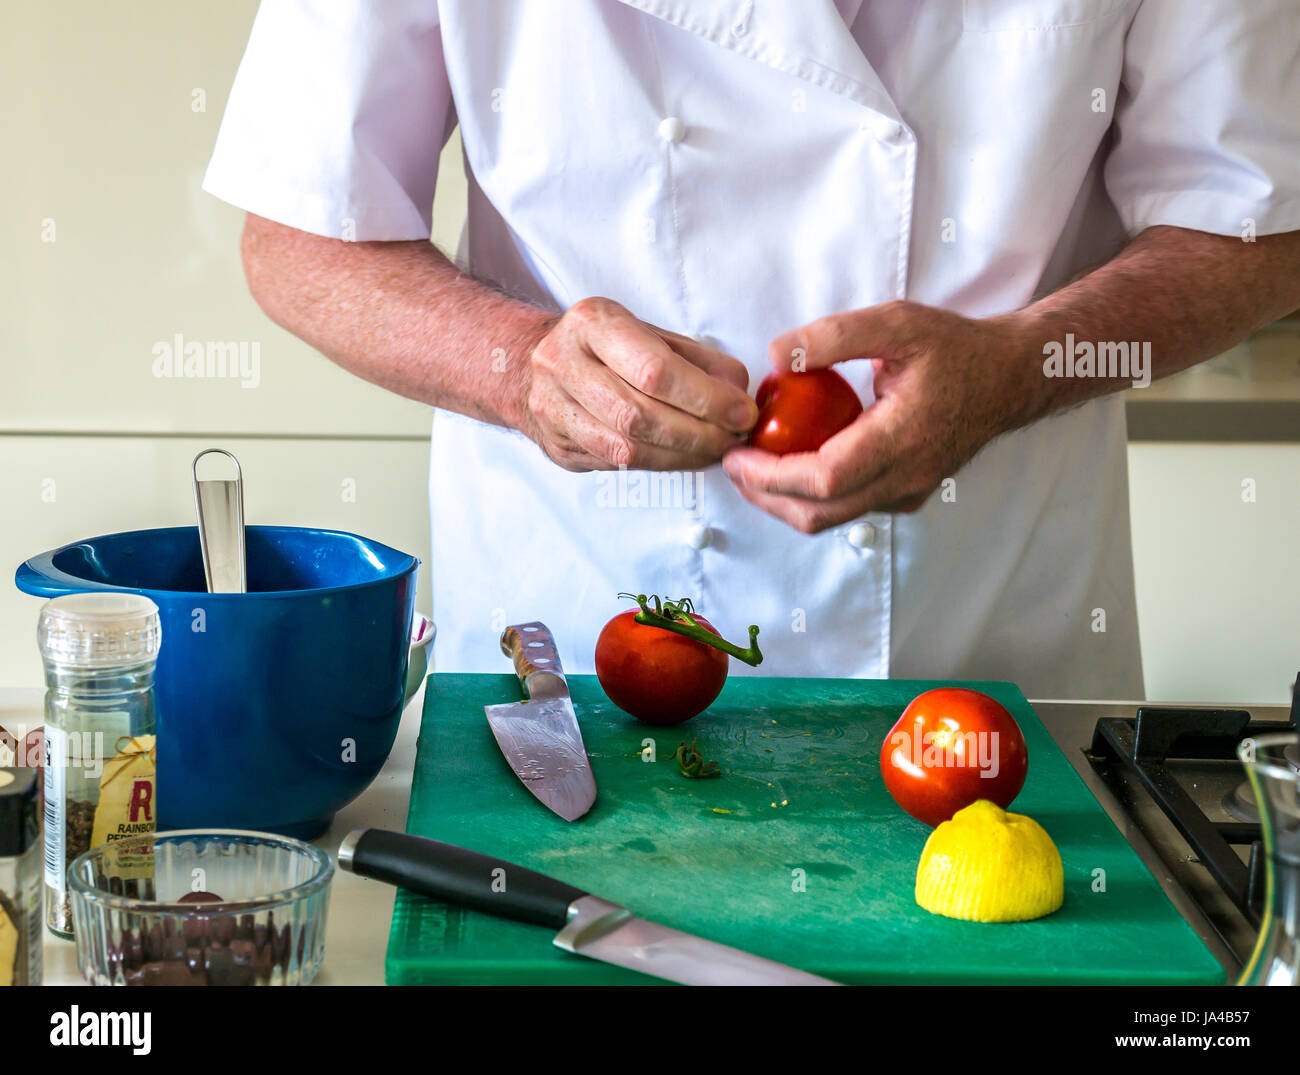 Un homme en chef prépare les blancs tomates sur une planche à découper verte sur un comptoir de cuisine avec d'autres ustensiles de cuisine et des placards blancs en arrière-plan Banque D'Images